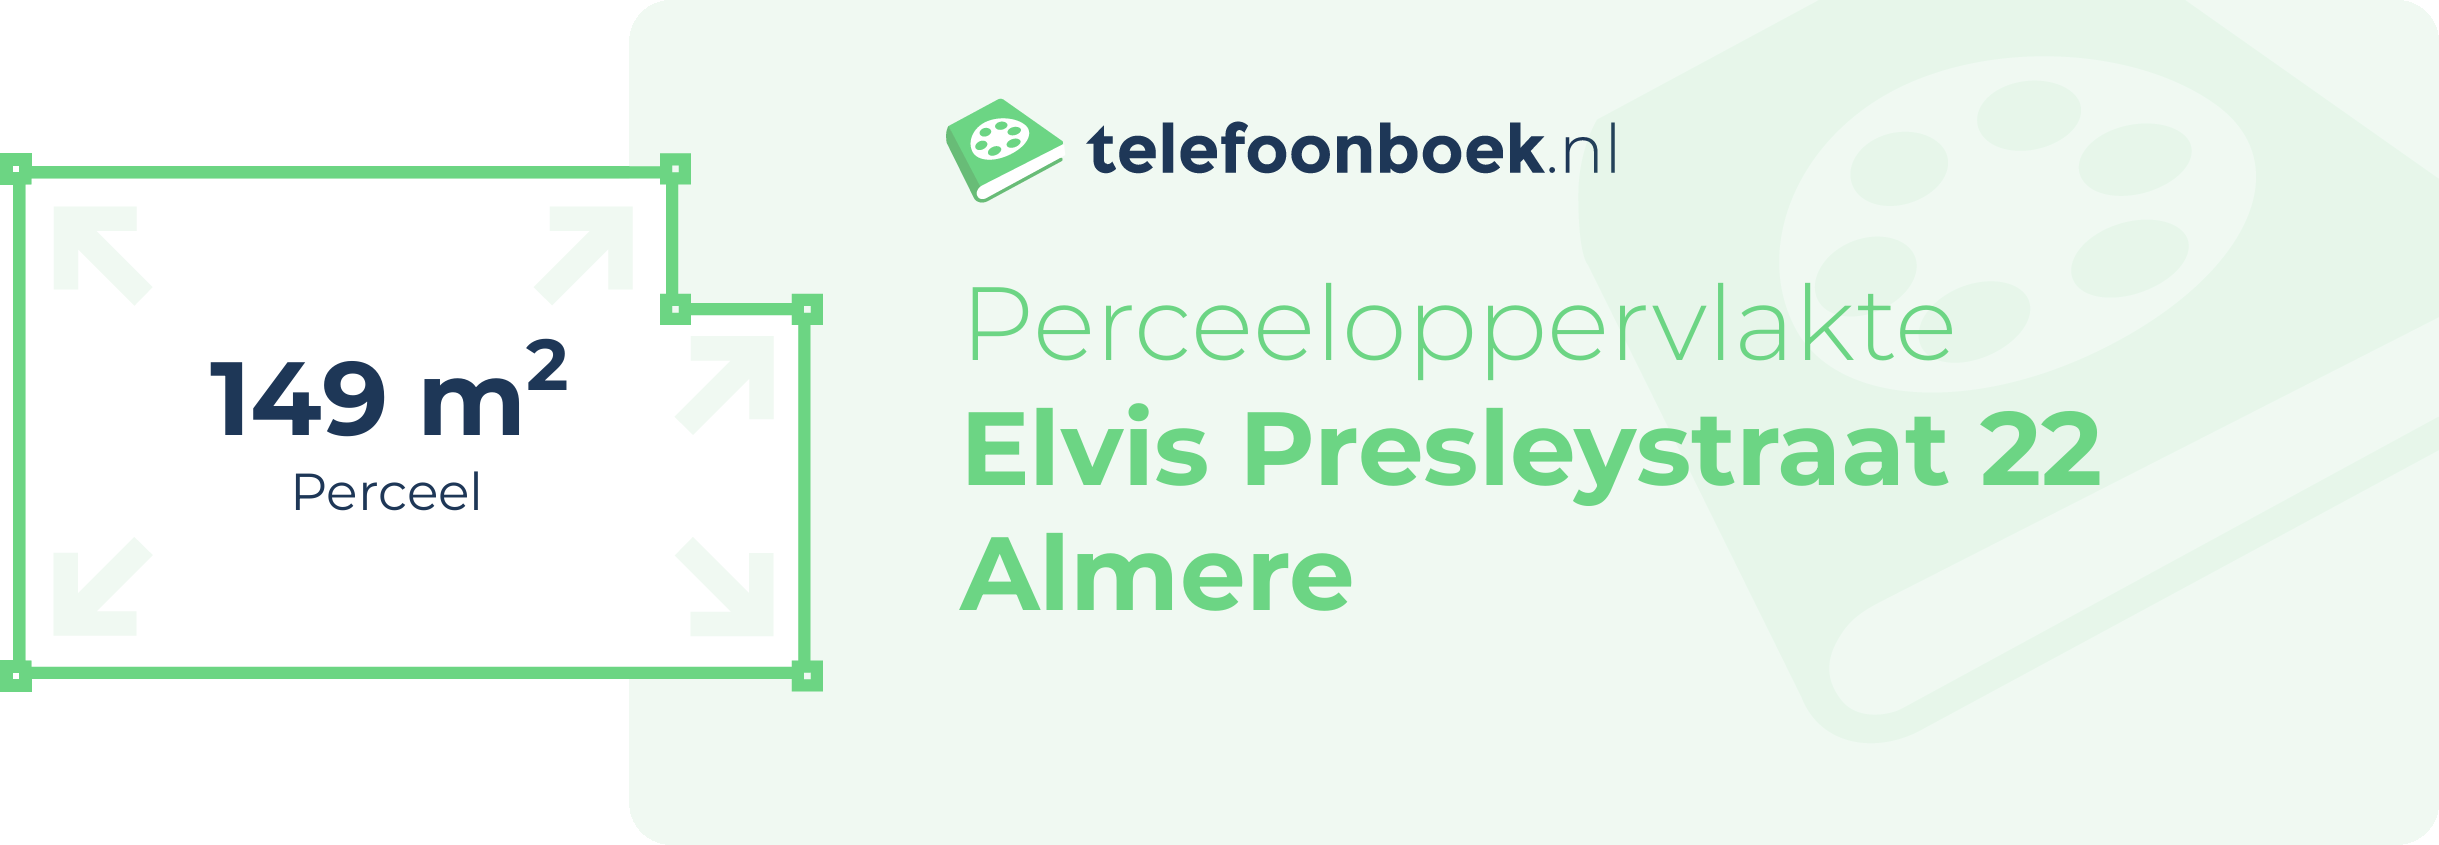 Perceeloppervlakte Elvis Presleystraat 22 Almere